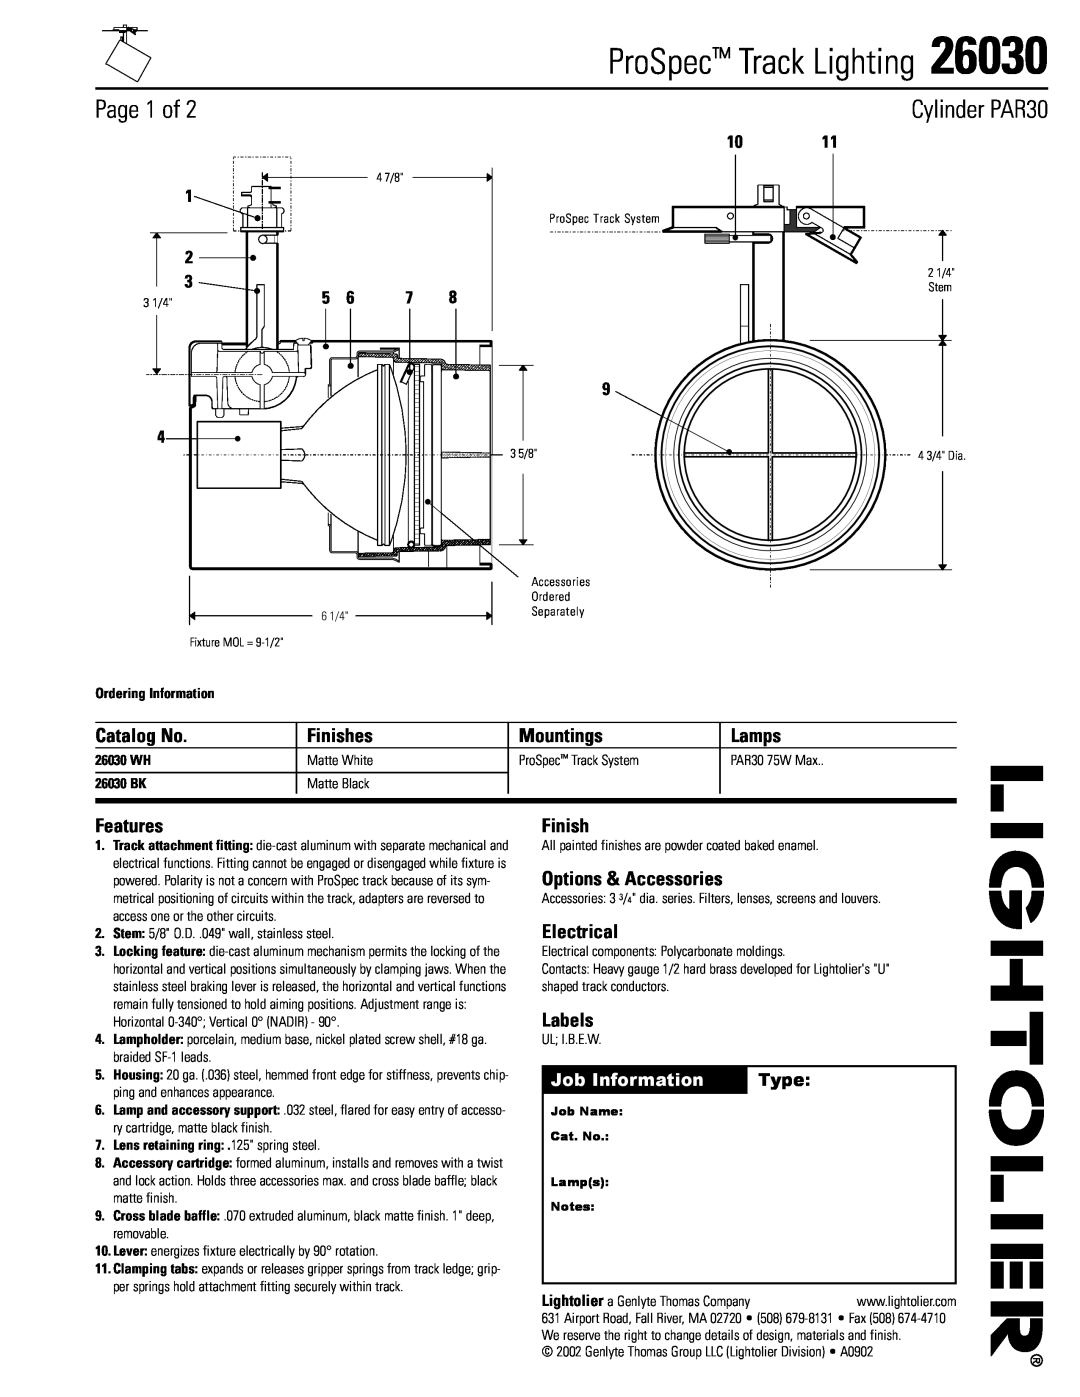 Lightolier manual ProSpec Track Lighting, Page 1 of, Cylinder PAR30, 1011, Job Information, Type, 26030 WH, 26030 BK 